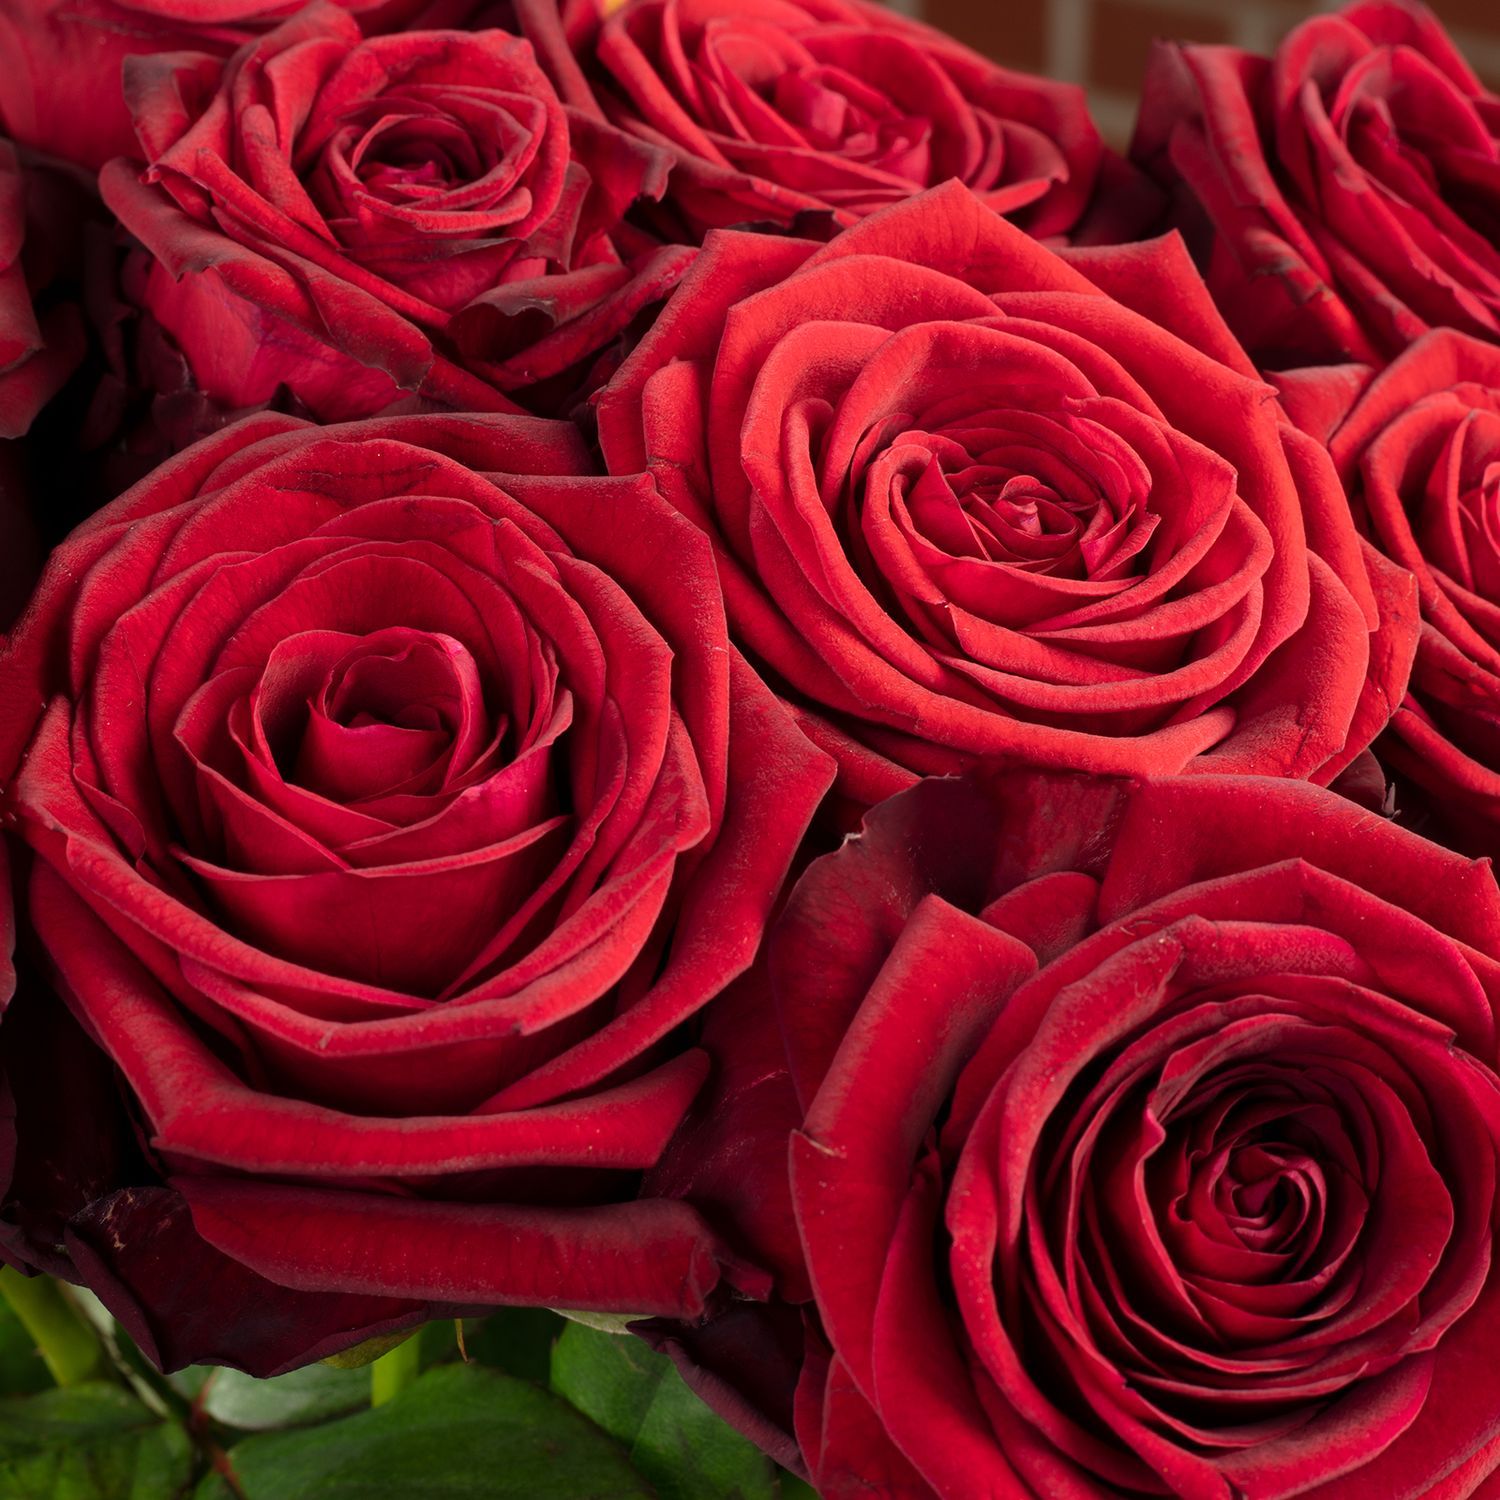  Rote Rosen Hintergrundbild 1500x1500. Paket Rosenstrauß Rose rot 'Red Naomi Supra'änge ca. 60 cm. Flowerbox Pro Floristikbedarf Onlineshop (vormals Blumenzentrale)